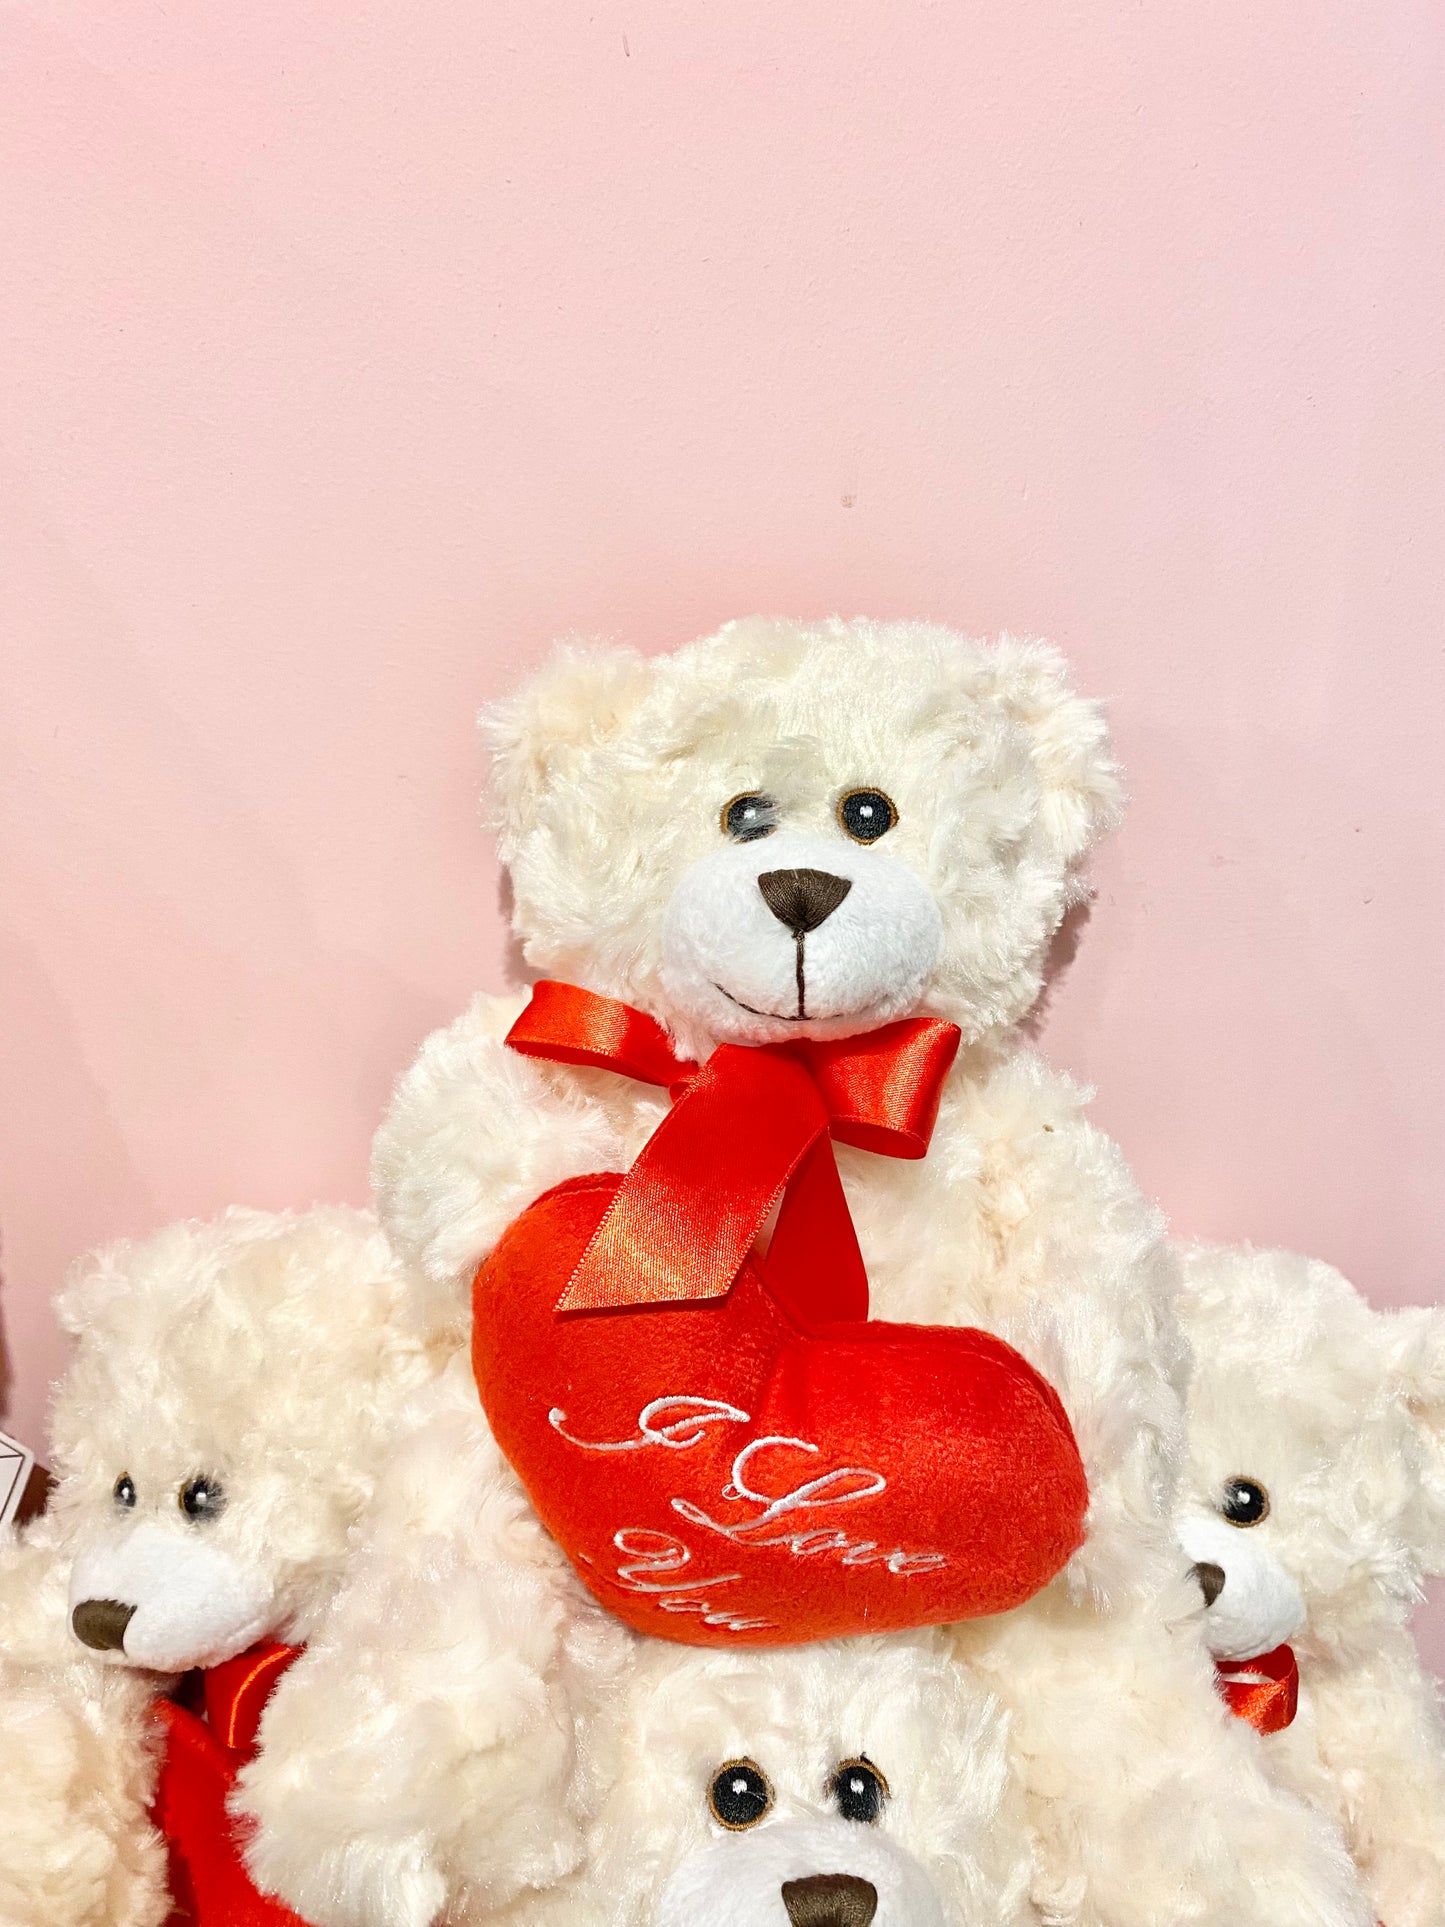 Teddy Bear with Heart 🐻❤️